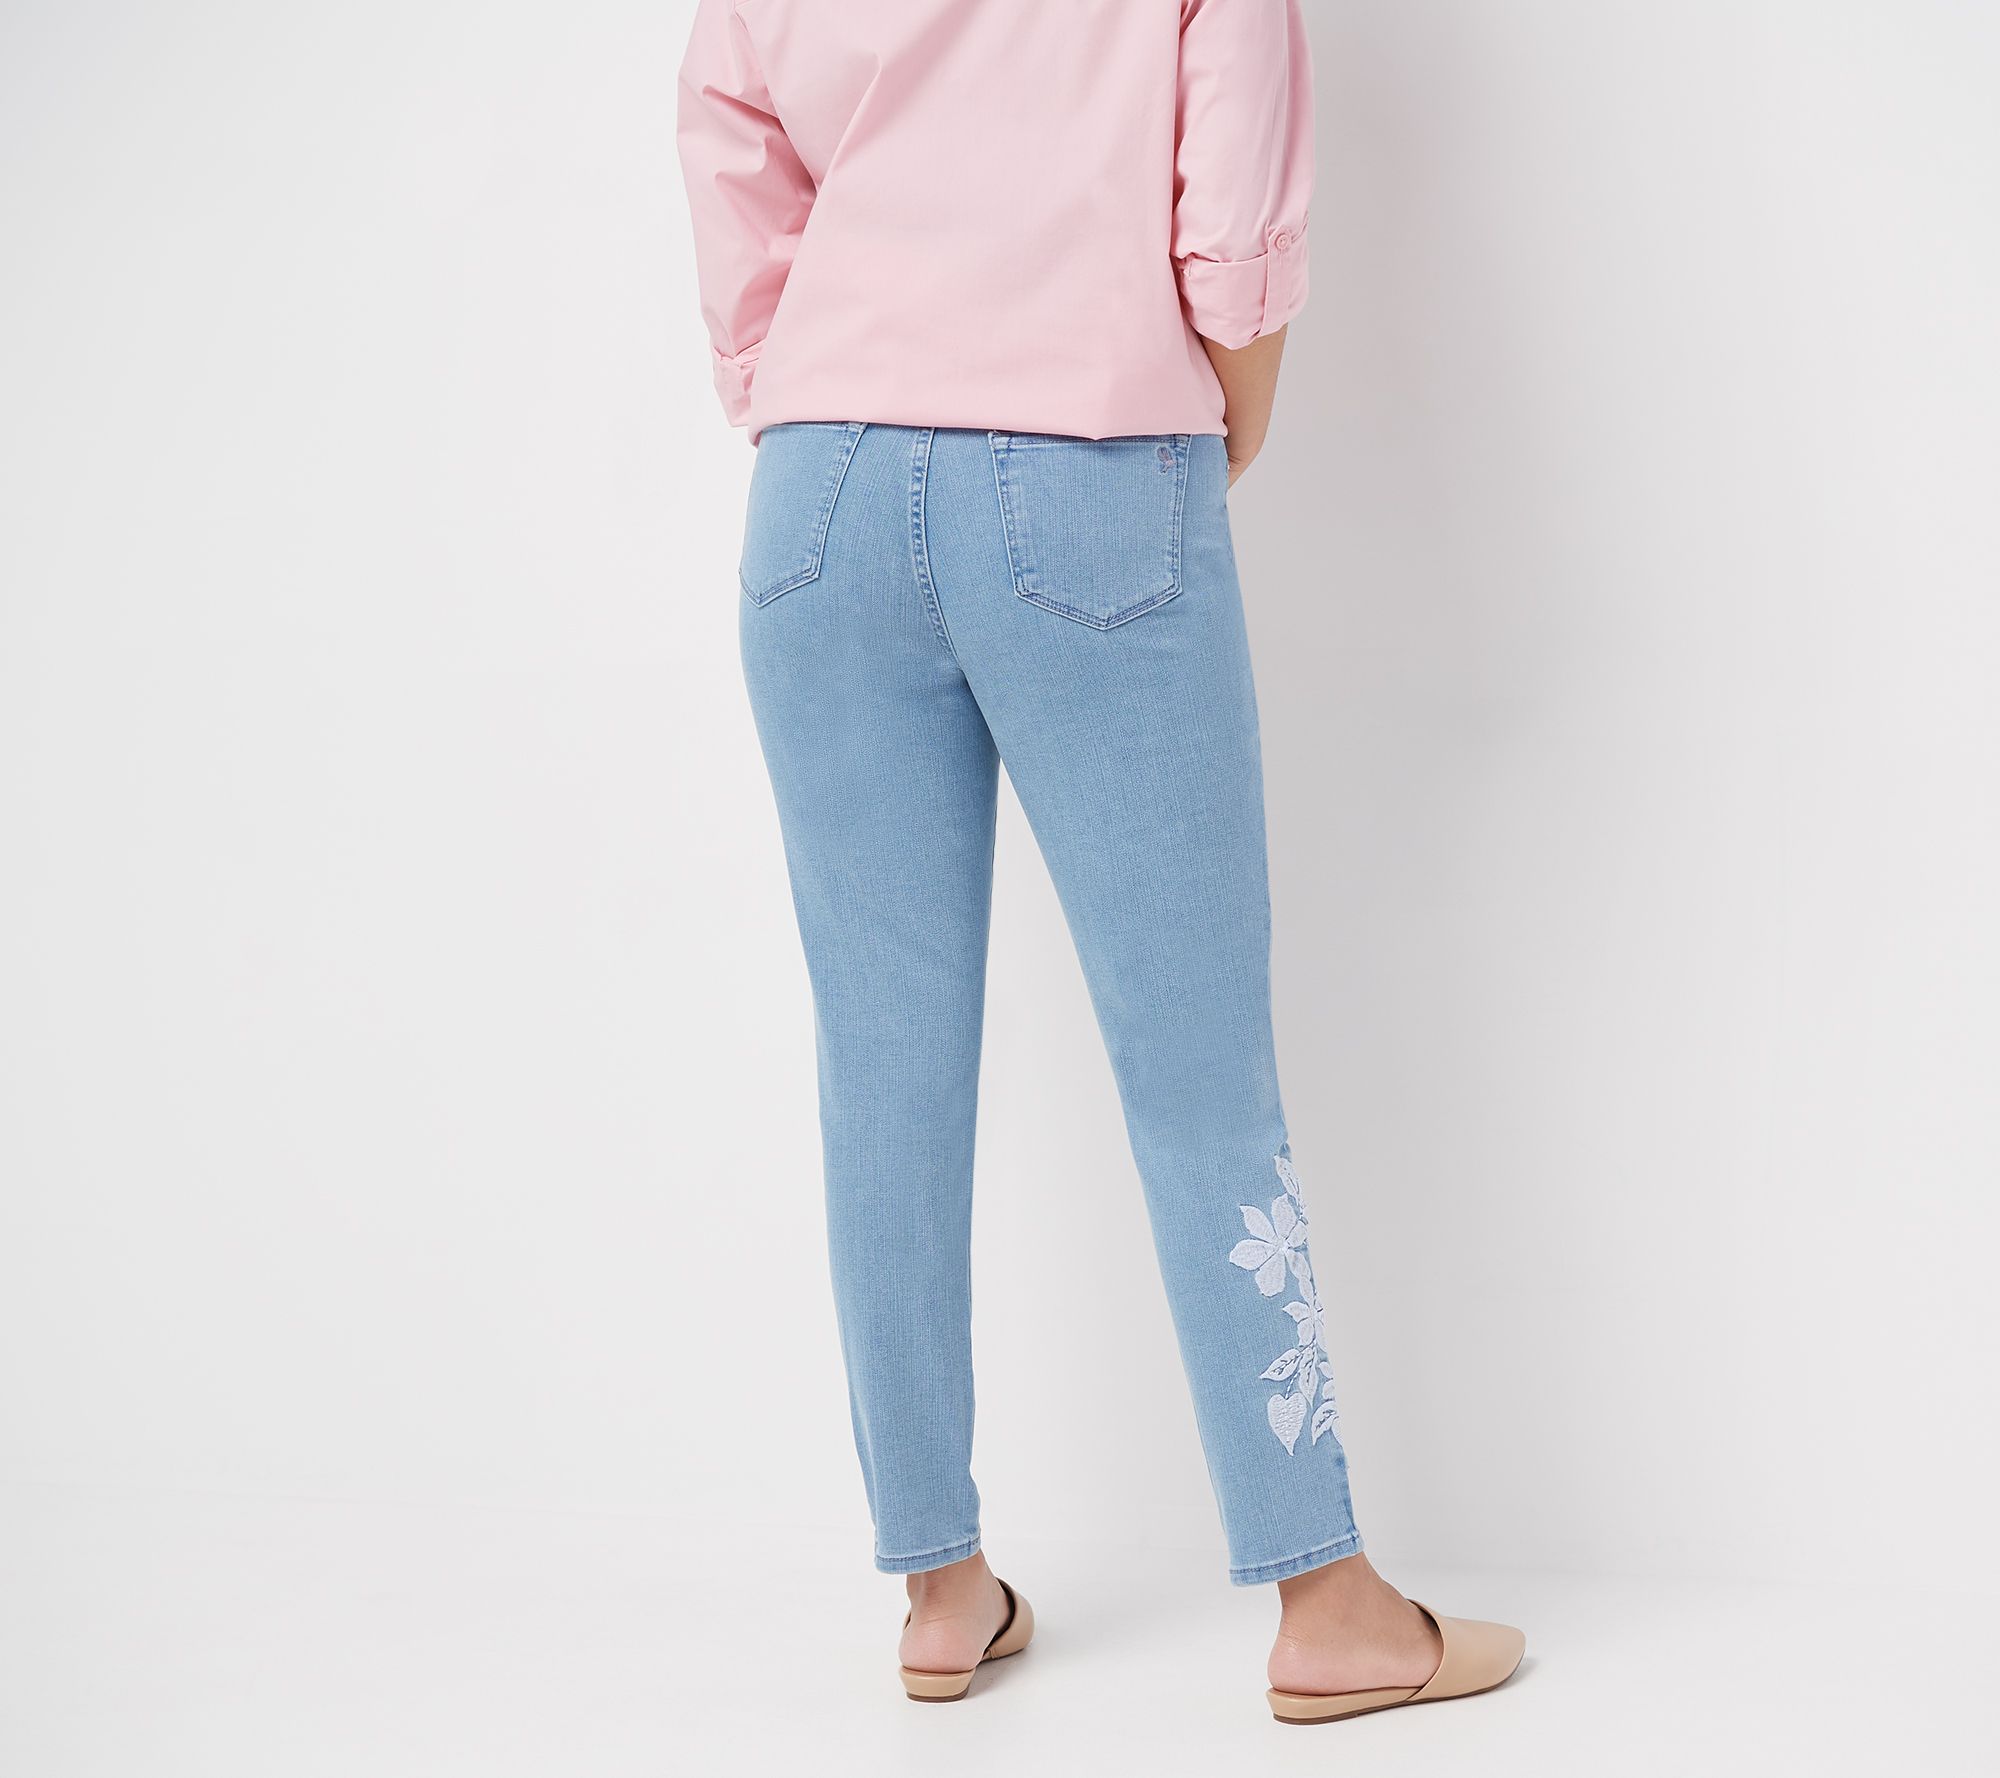 Details about   Martha Stewart Knit Denim Ankle Jeans w/ Zipper Detail Dark Indigo Size Petite 8